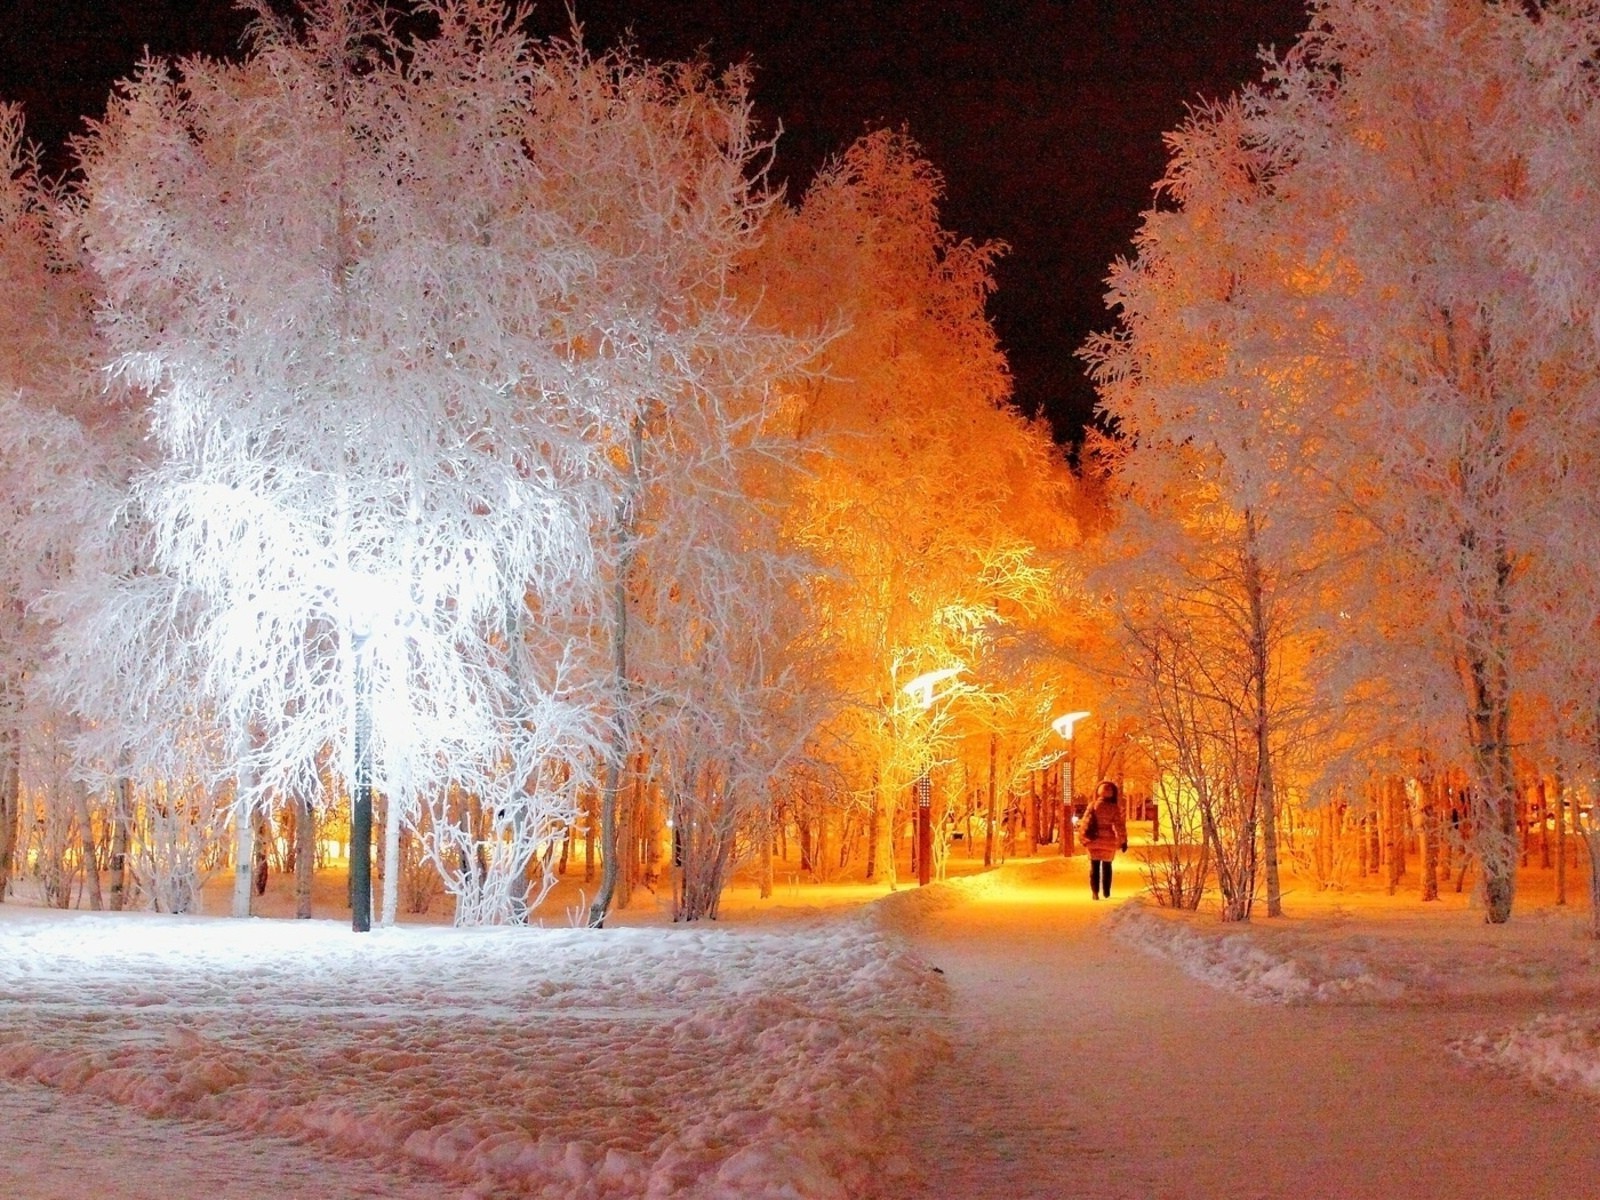 зима снег мороз холодная осень дерево пейзаж древесины на открытом воздухе природа замороженные лед сезон погода свет парк туман рассвет яркий